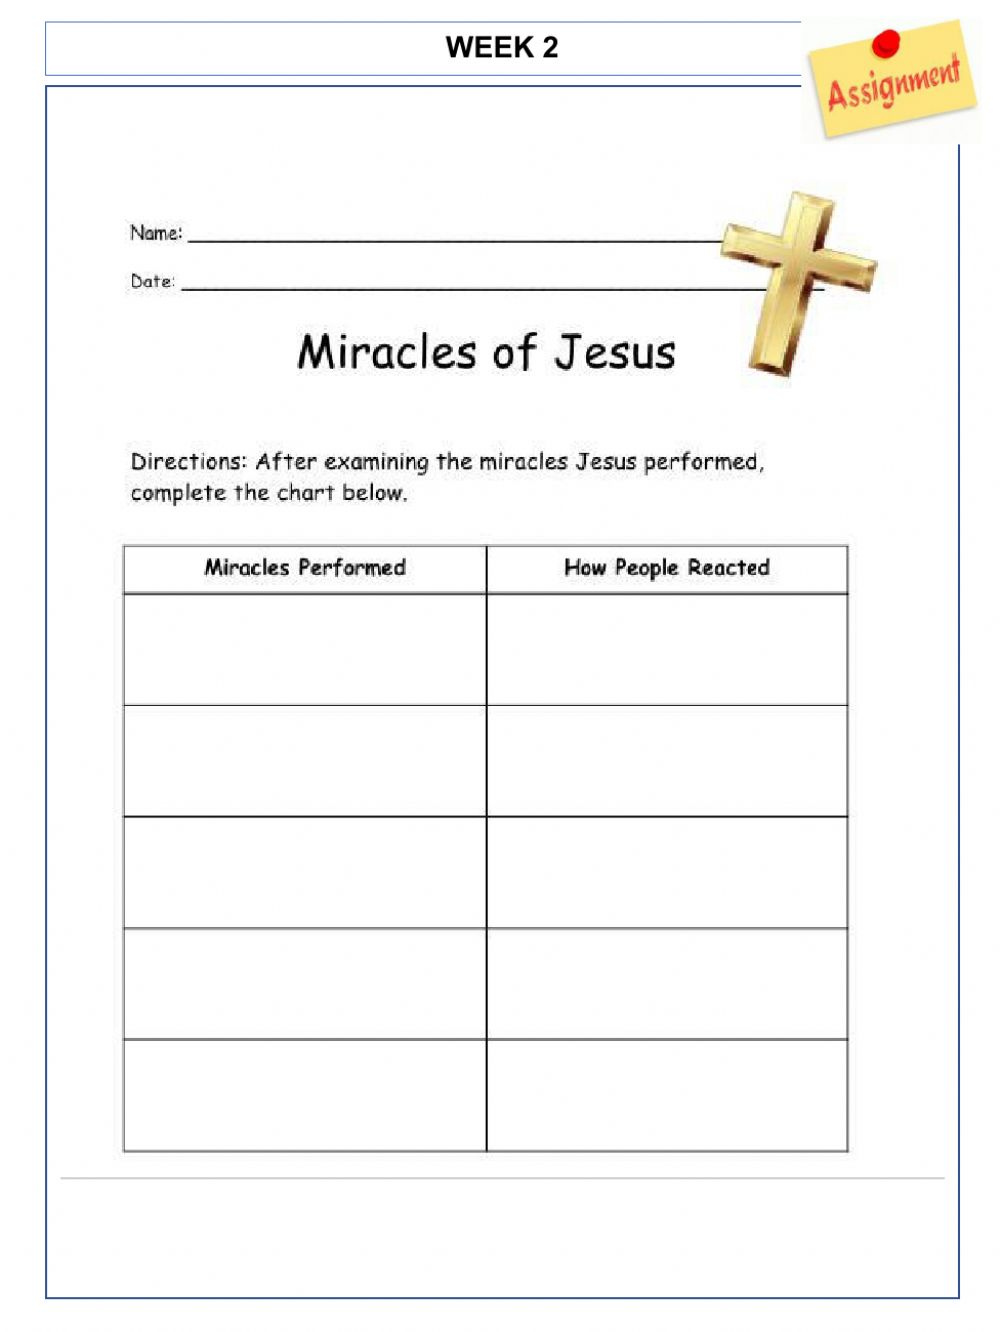 Miracles Of Jesus Worksheet